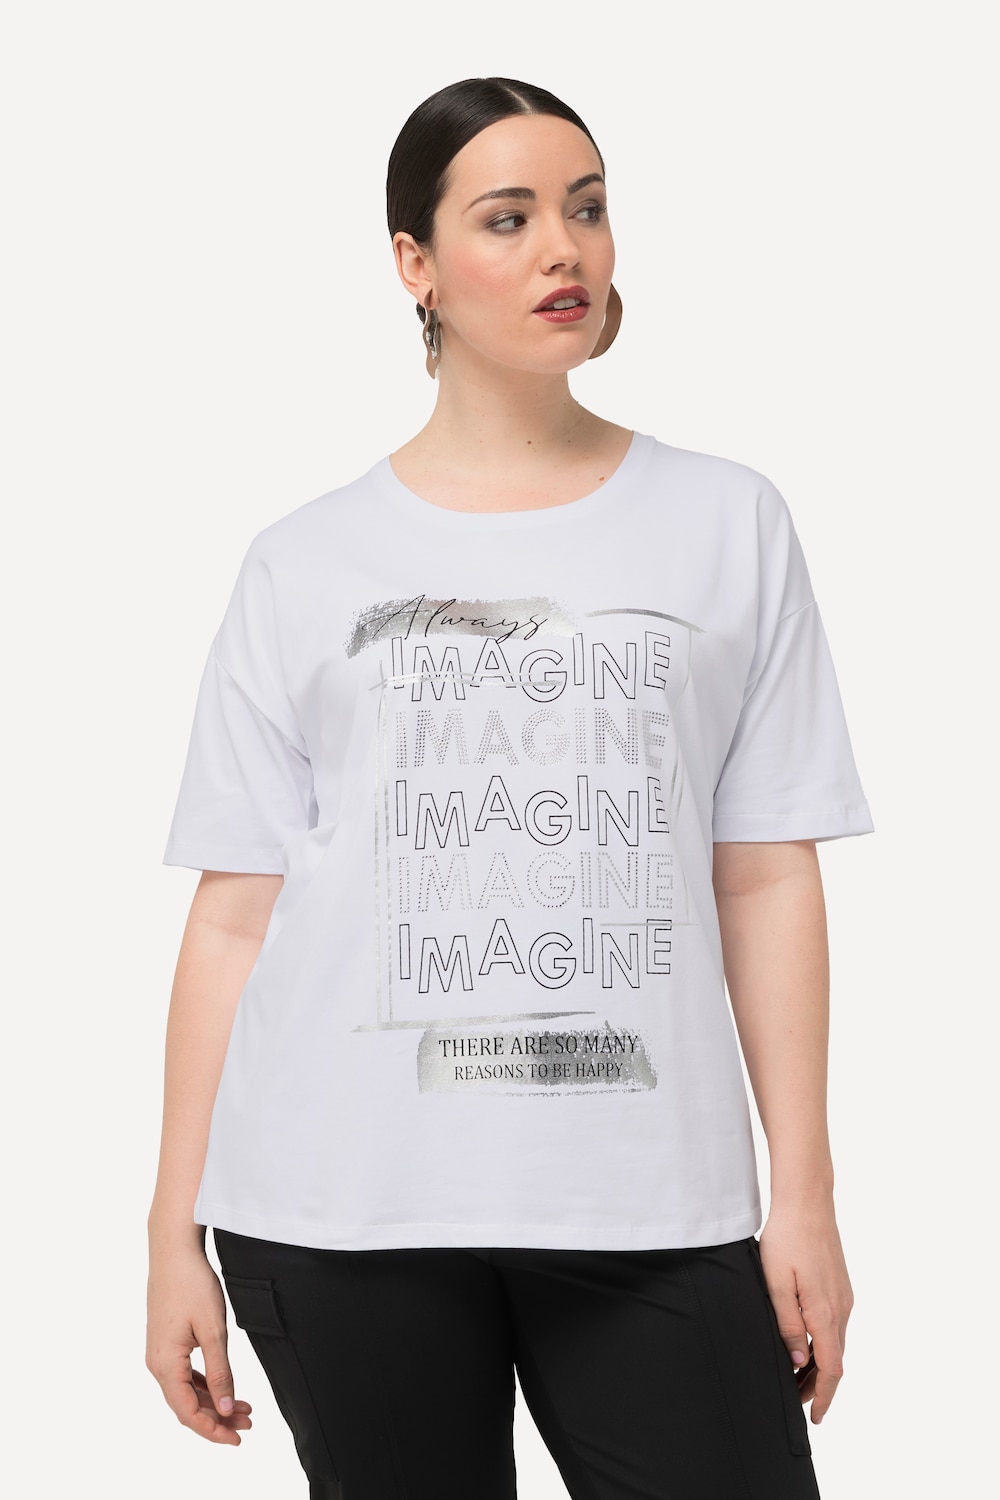 T-Shirt, Imagine, Ziersteine, Rundhals, Halbarm